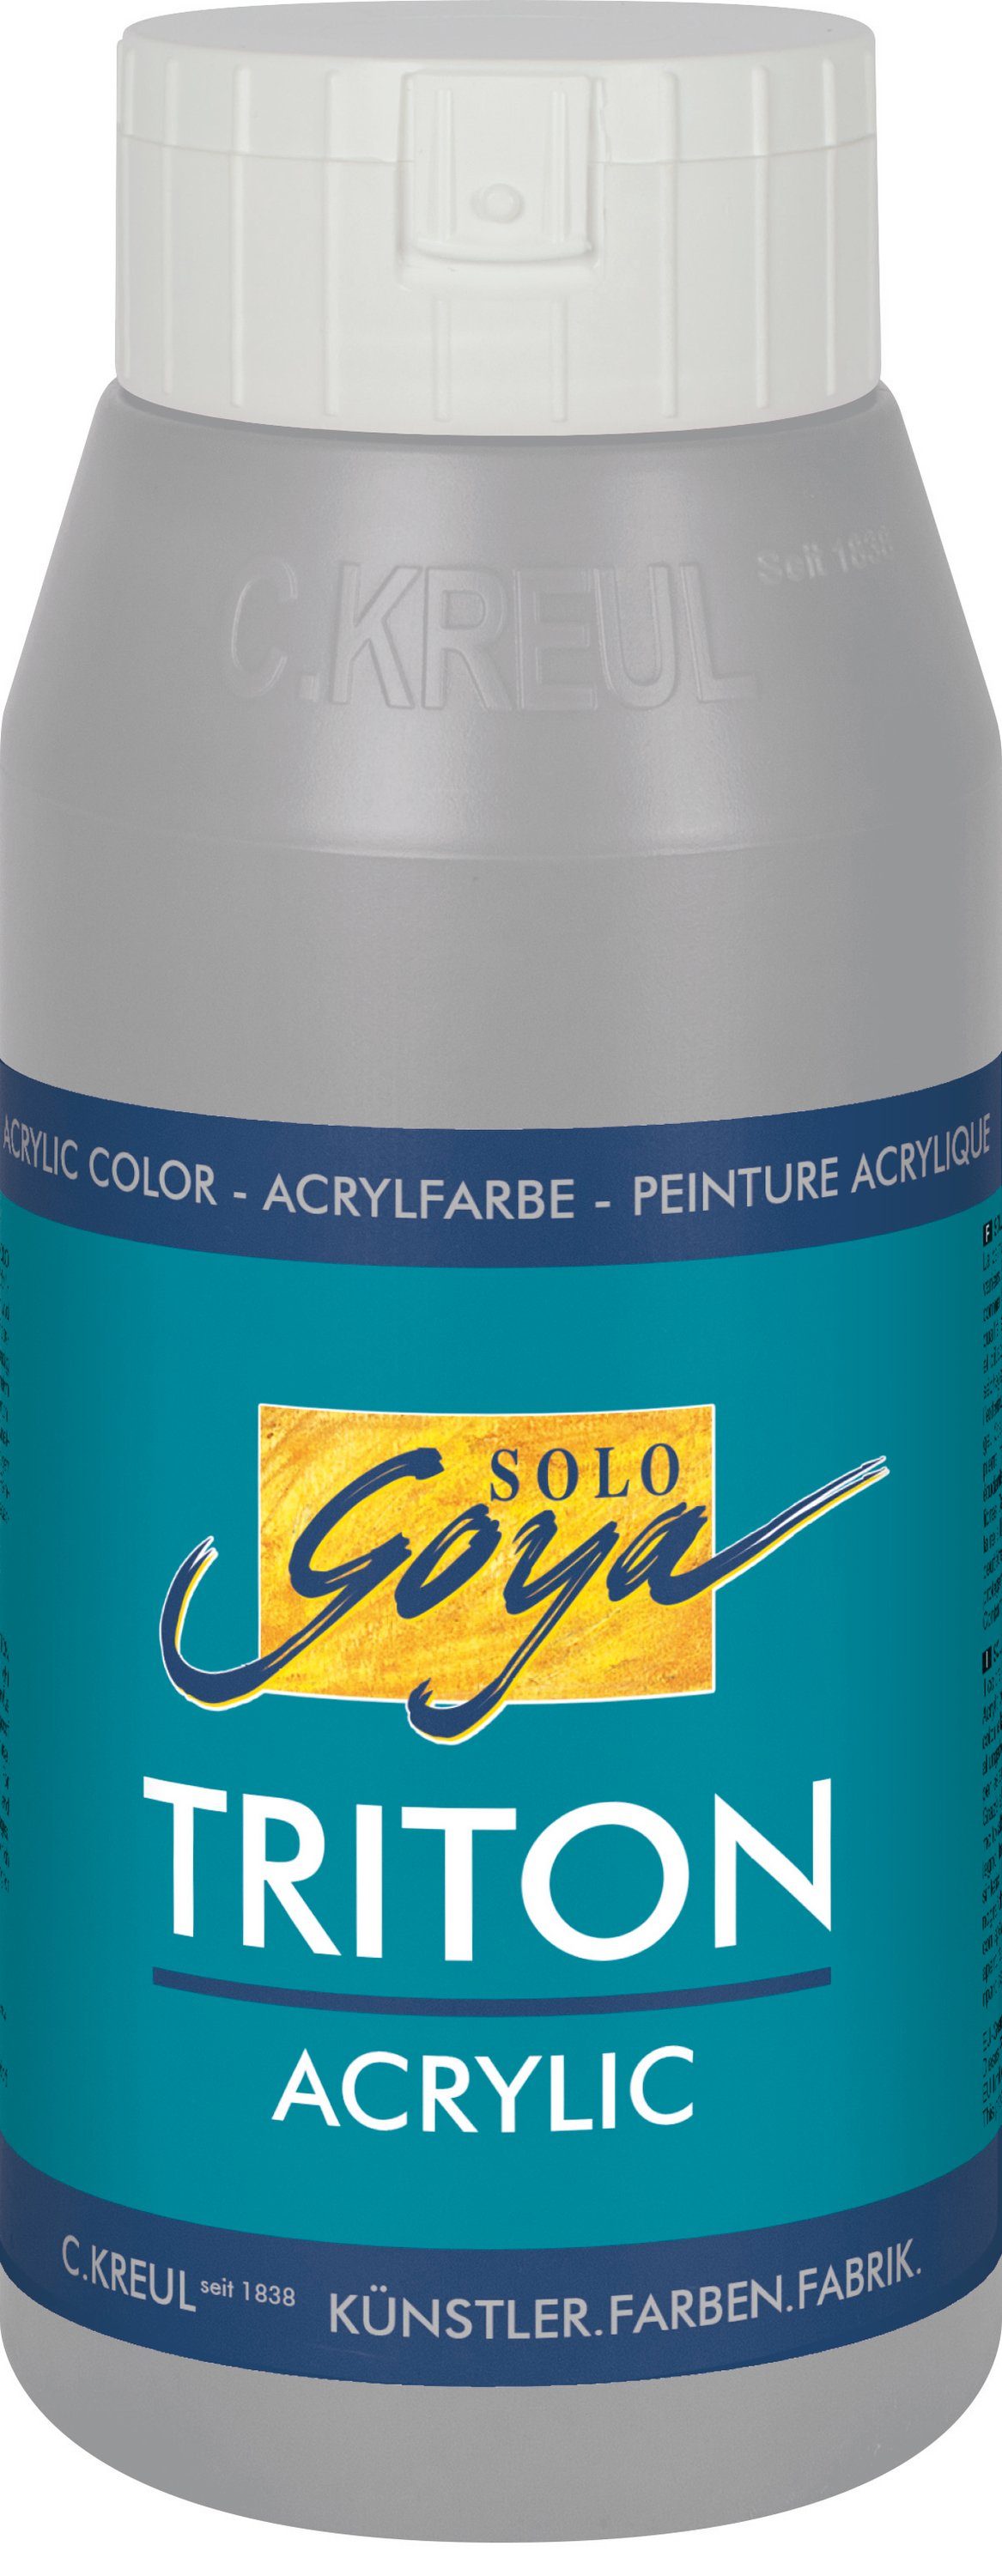 Acrylic, ml Triton Solo Goya Acrylfarbe Kreul 750 Neutralgrau